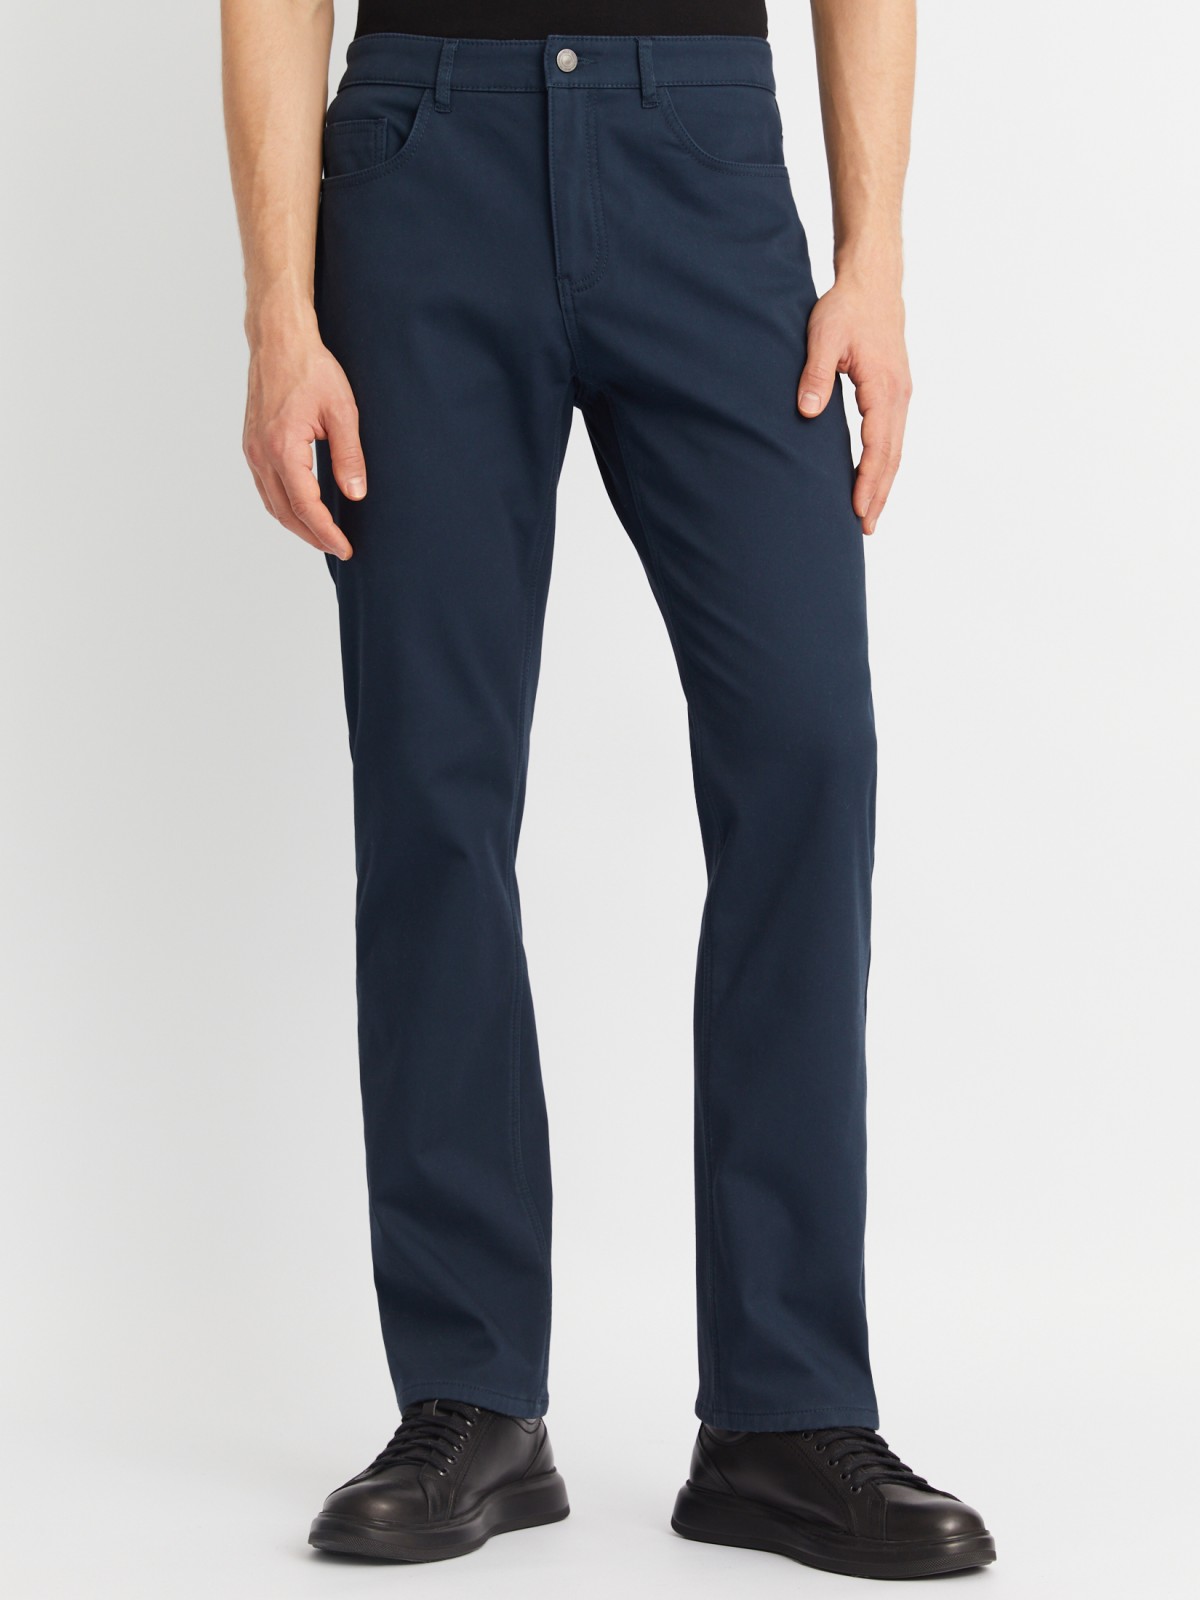 Утеплённые прямые брюки из хлопка с подкладкой из флиса zolla 01243730L013, цвет голубой, размер 30 - фото 2